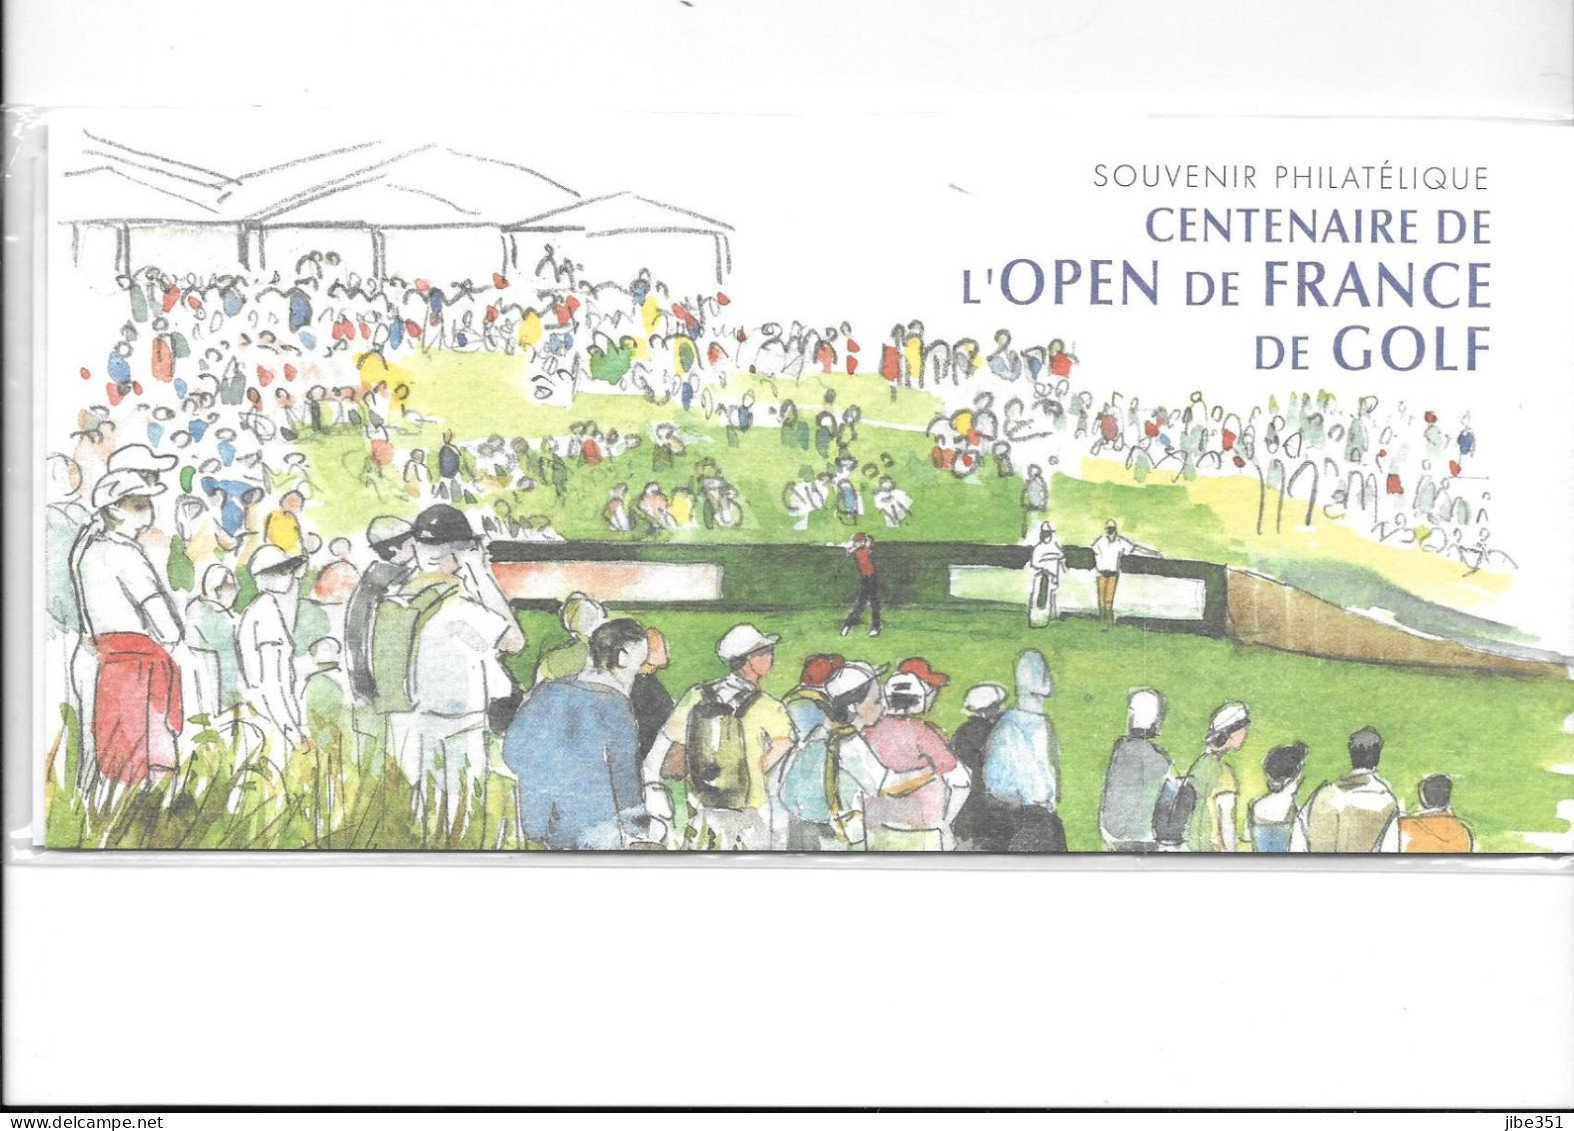 Souvenir Philatélique Centenaire De L'open De France De Golf Neuf Sous Blister - Bloques Souvenir